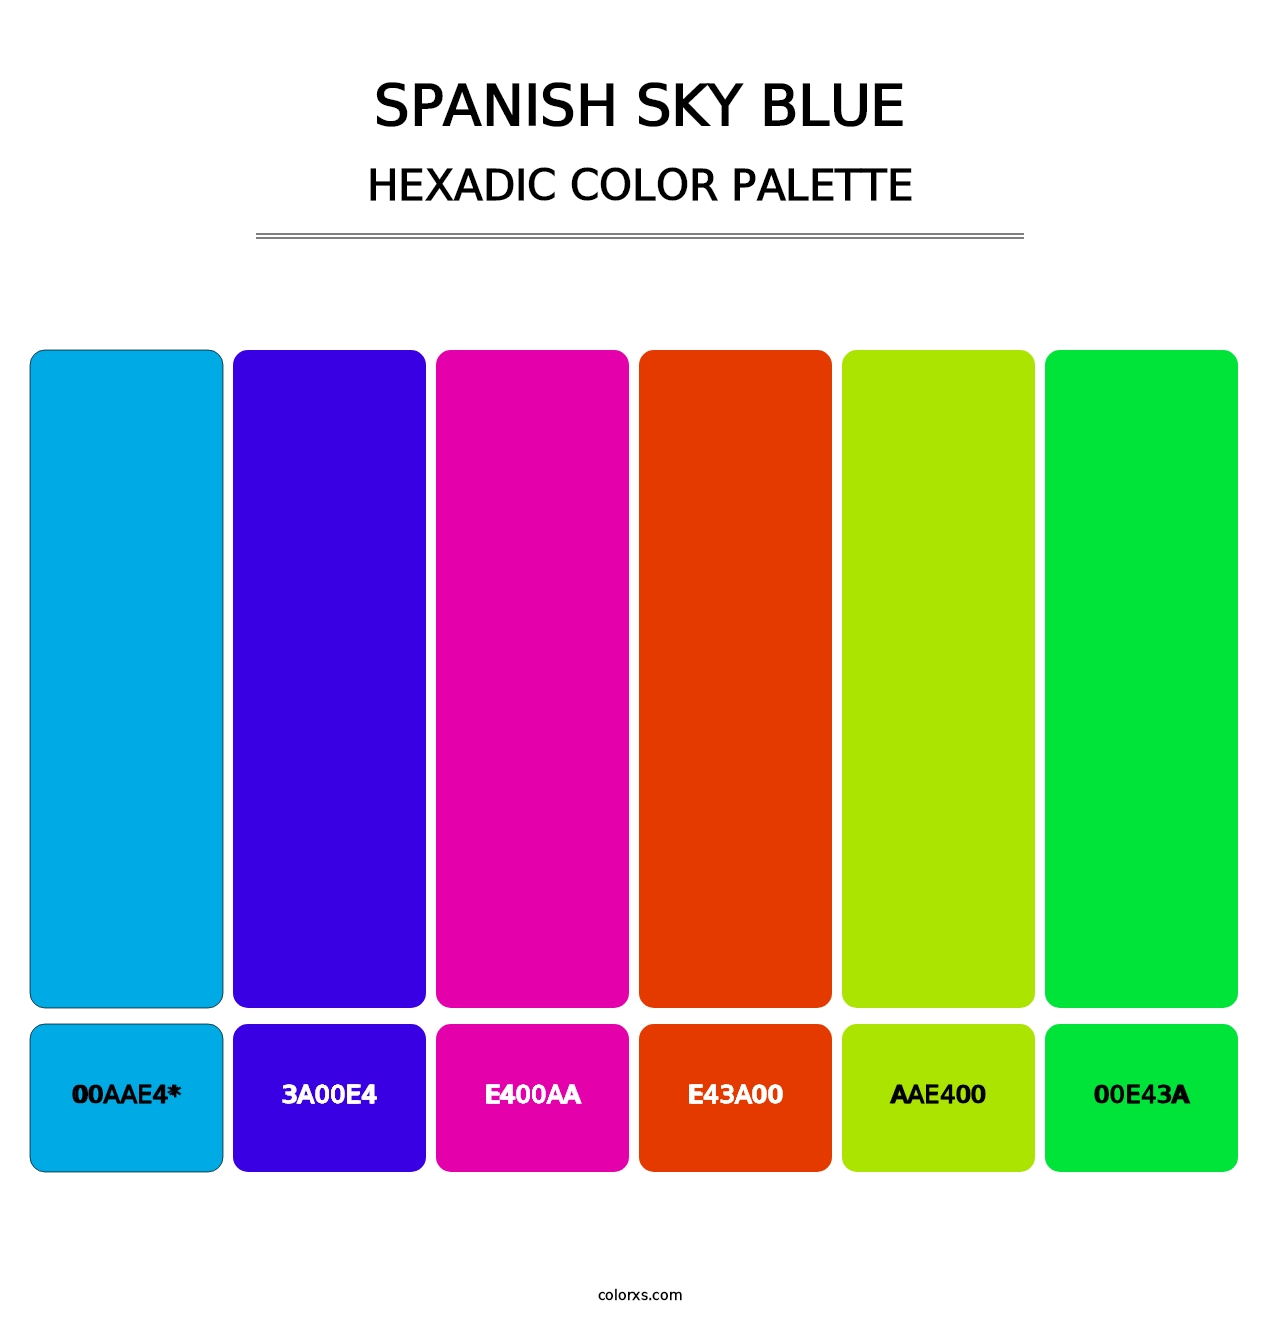 Spanish Sky Blue - Hexadic Color Palette